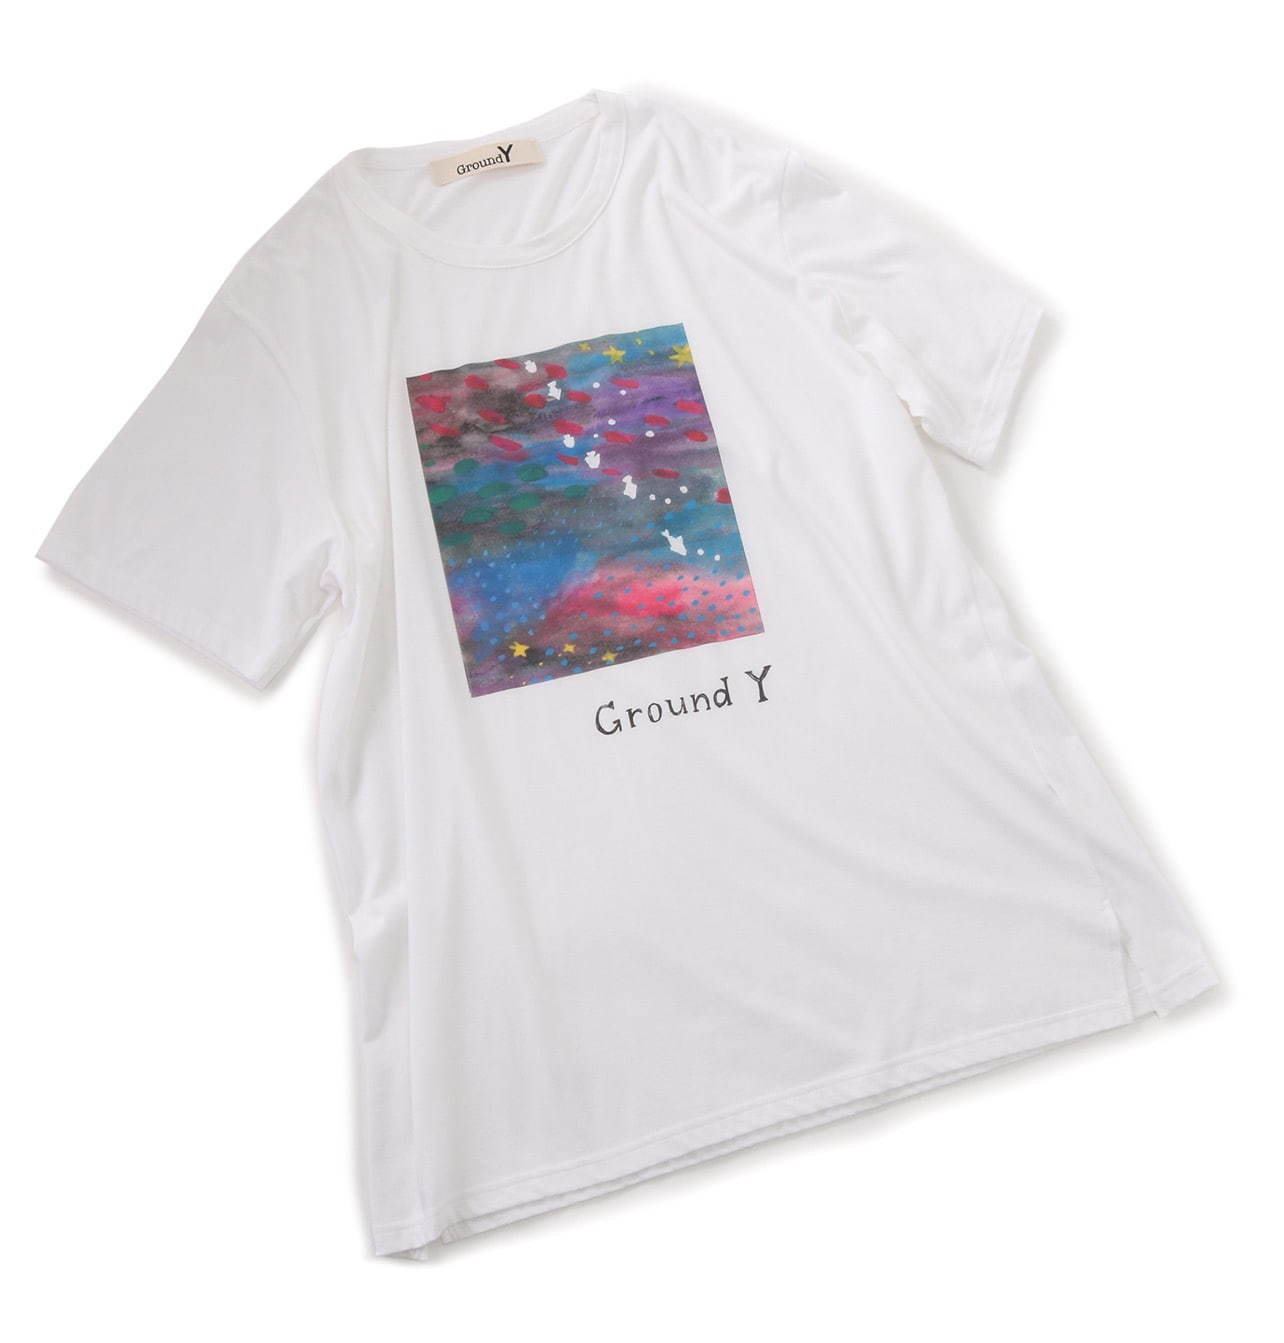 Ground Y“夢の中”などのイラストを施したTシャツ、深川麻衣の描き下ろし｜写真2